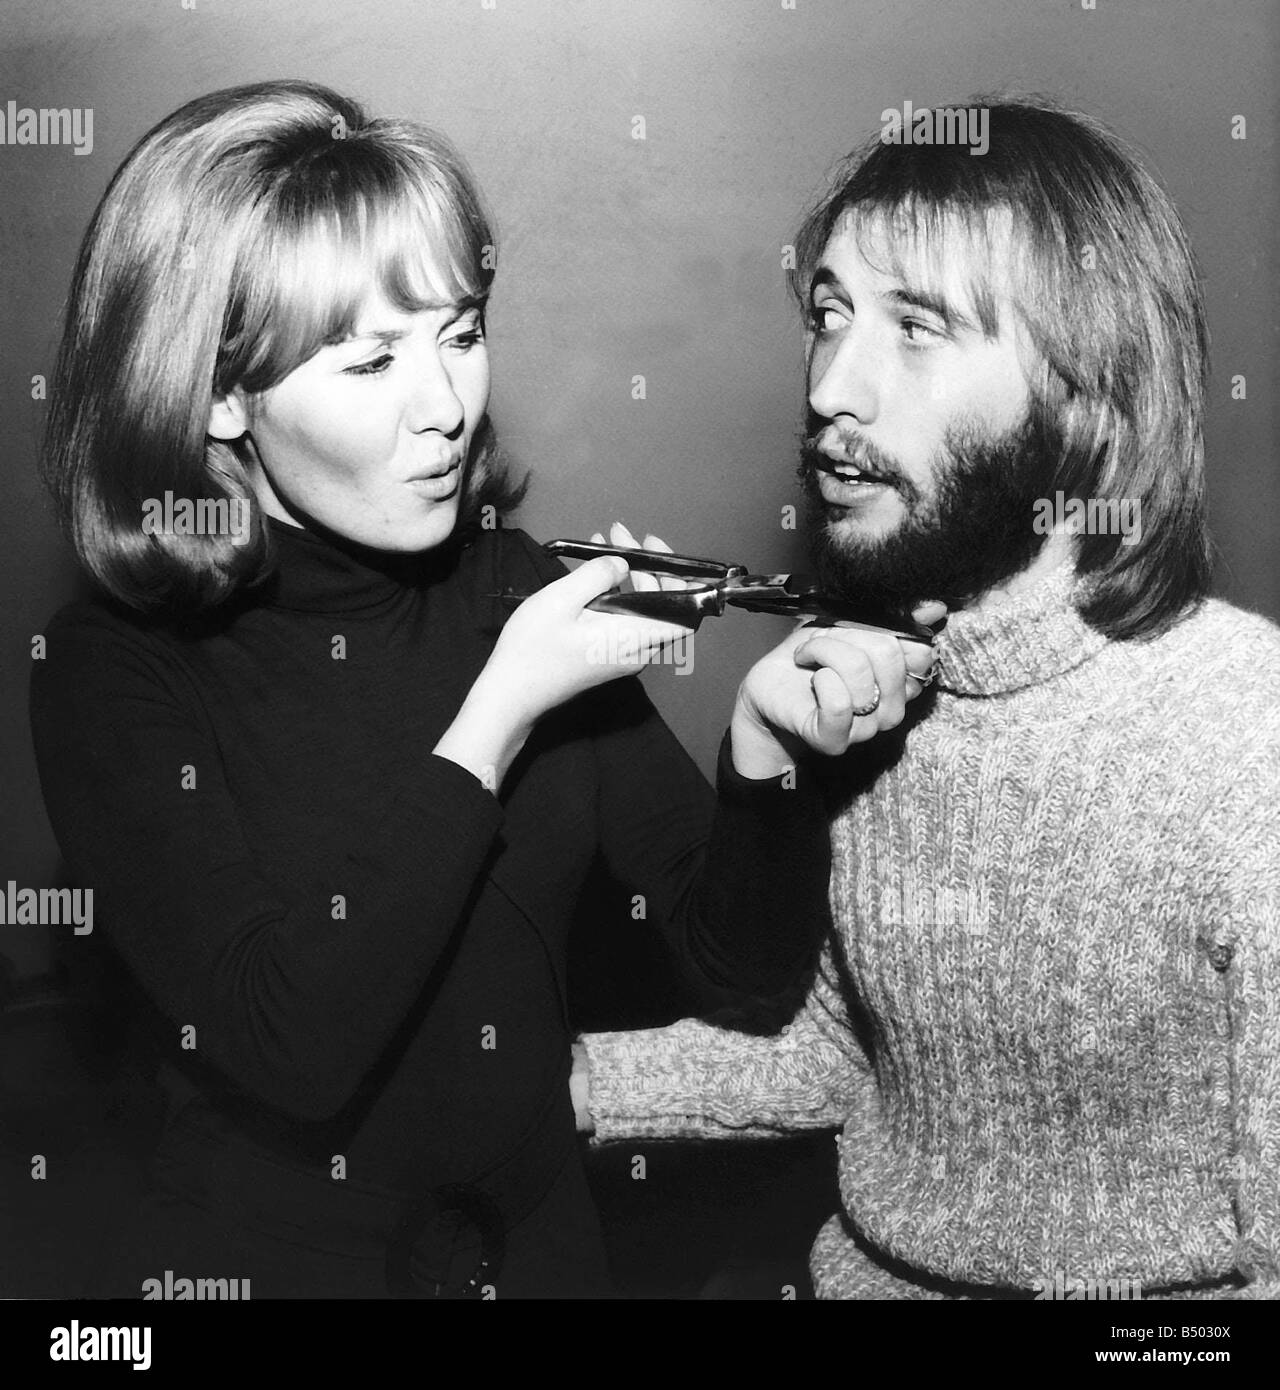 La chanteuse Lulu donnant mari Maurice Gibb des Bee Gees un rasage Banque D'Images